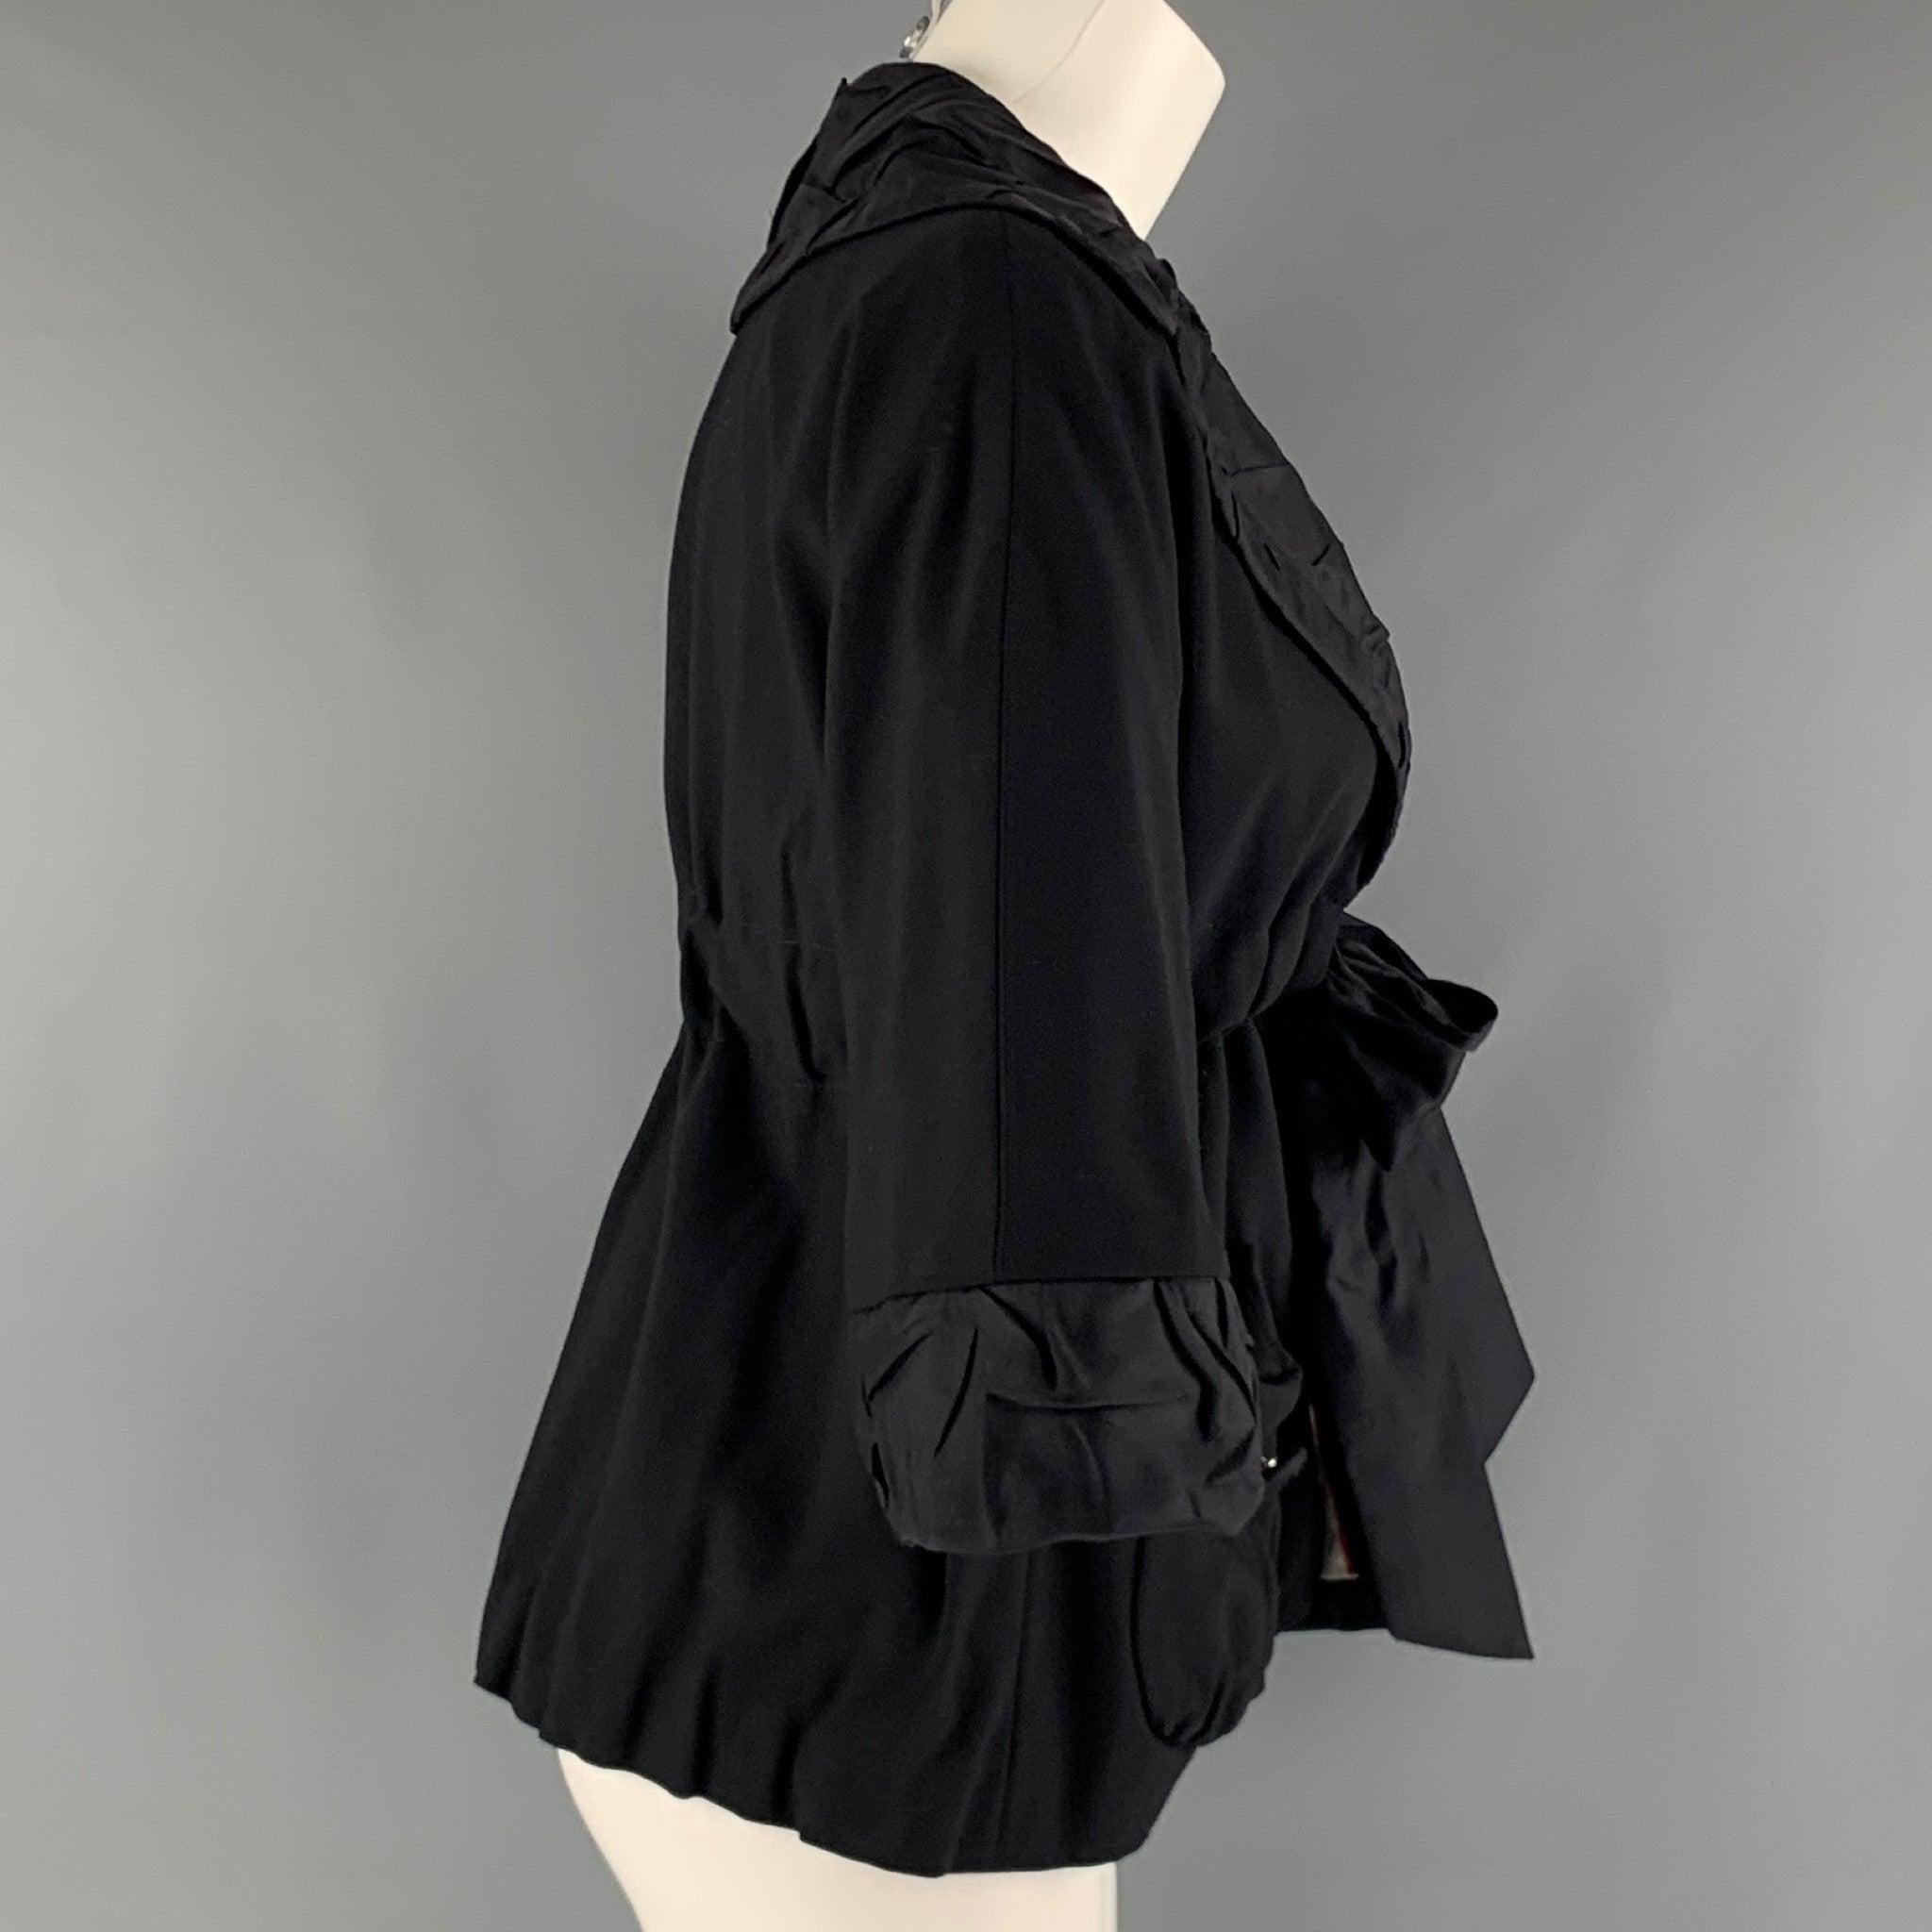 MARC by MARC JACOBS Jacke aus schwarzem, gewebtem Viskosematerial mit strukturiertem Kragen, 3/4-Ärmeln, aufgesetzten Taschen auf der Vorderseite und Bindebandverschluss. Ausgezeichneter Pre-Owned Zustand. 

Markiert:   2 

Abmessungen: 
